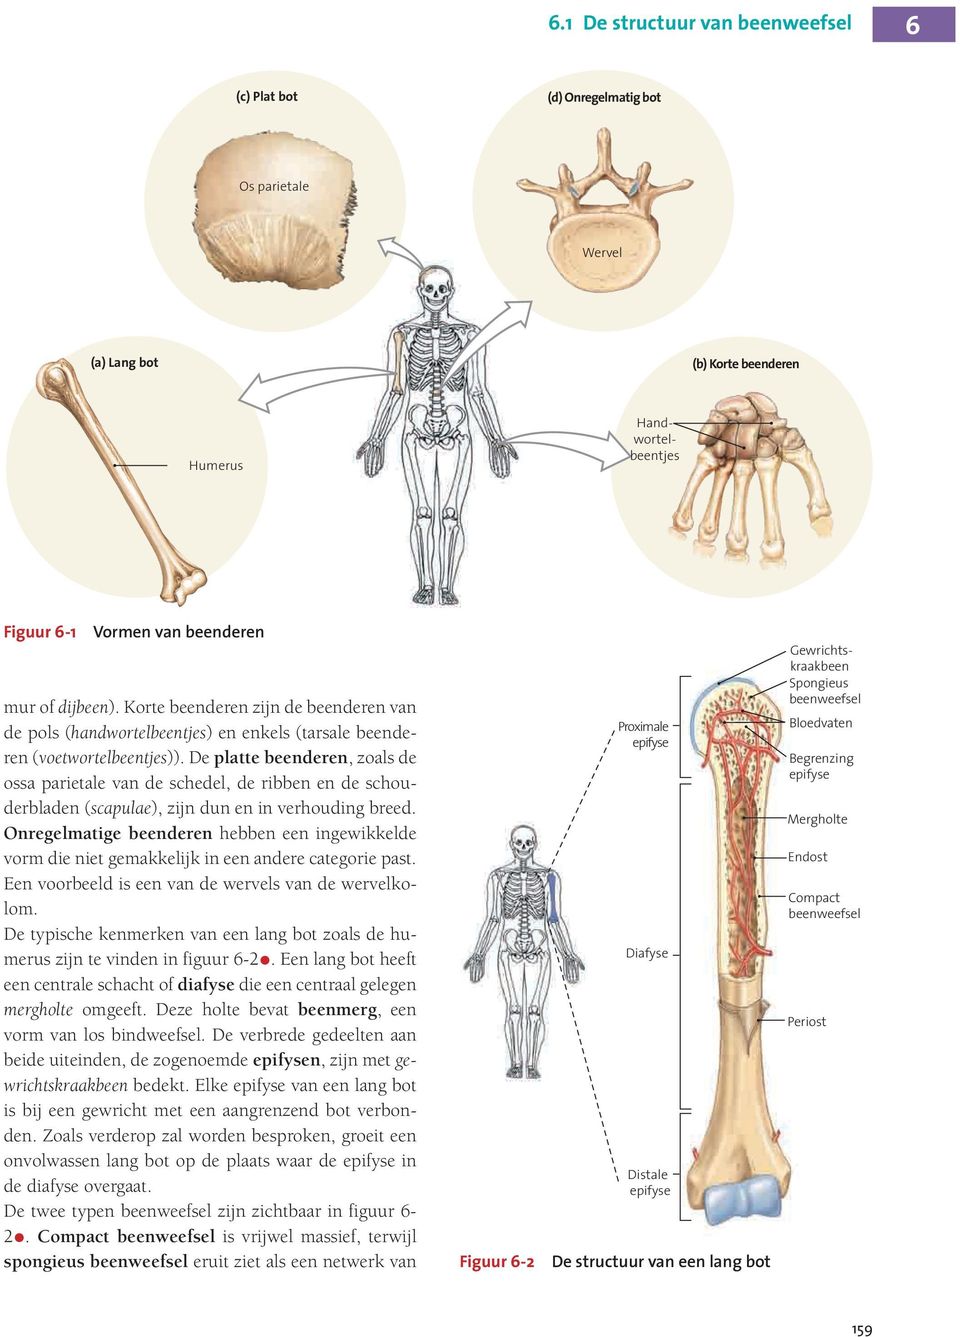 De platte beenderen, zoals de ossa parietale van de schedel, de ribben en de schouderbladen (scapulae), zijn dun en in verhouding breed.